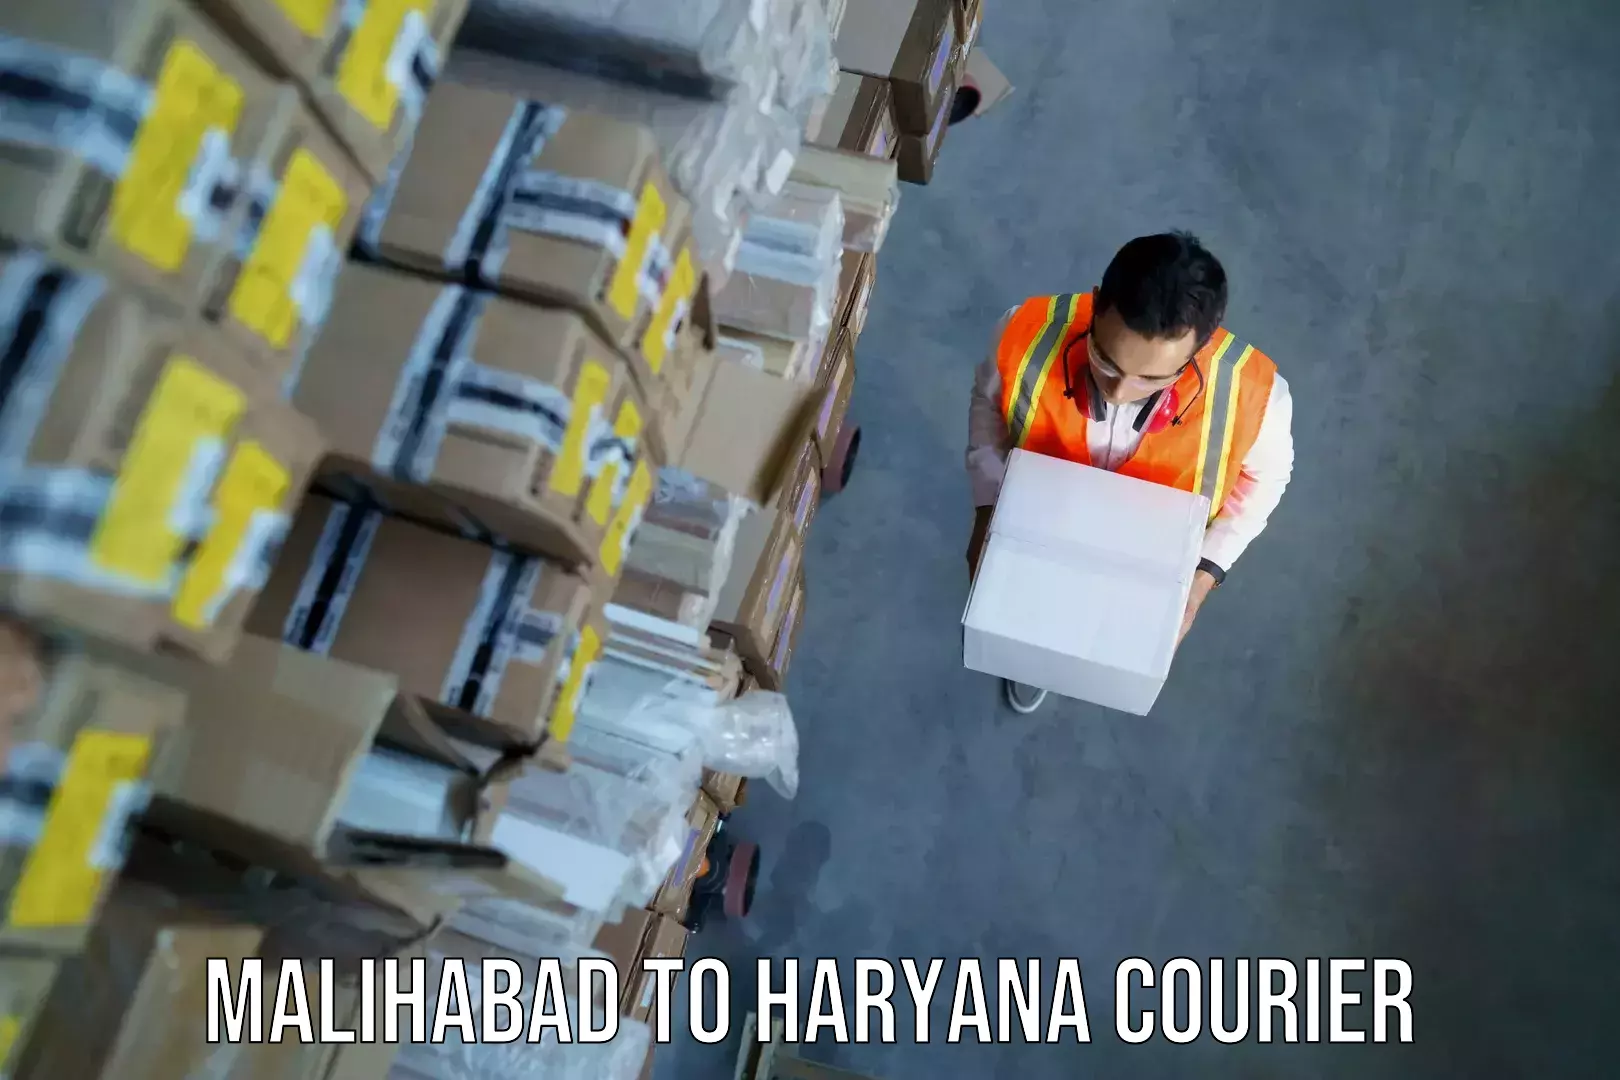 Baggage shipping service Malihabad to NCR Haryana